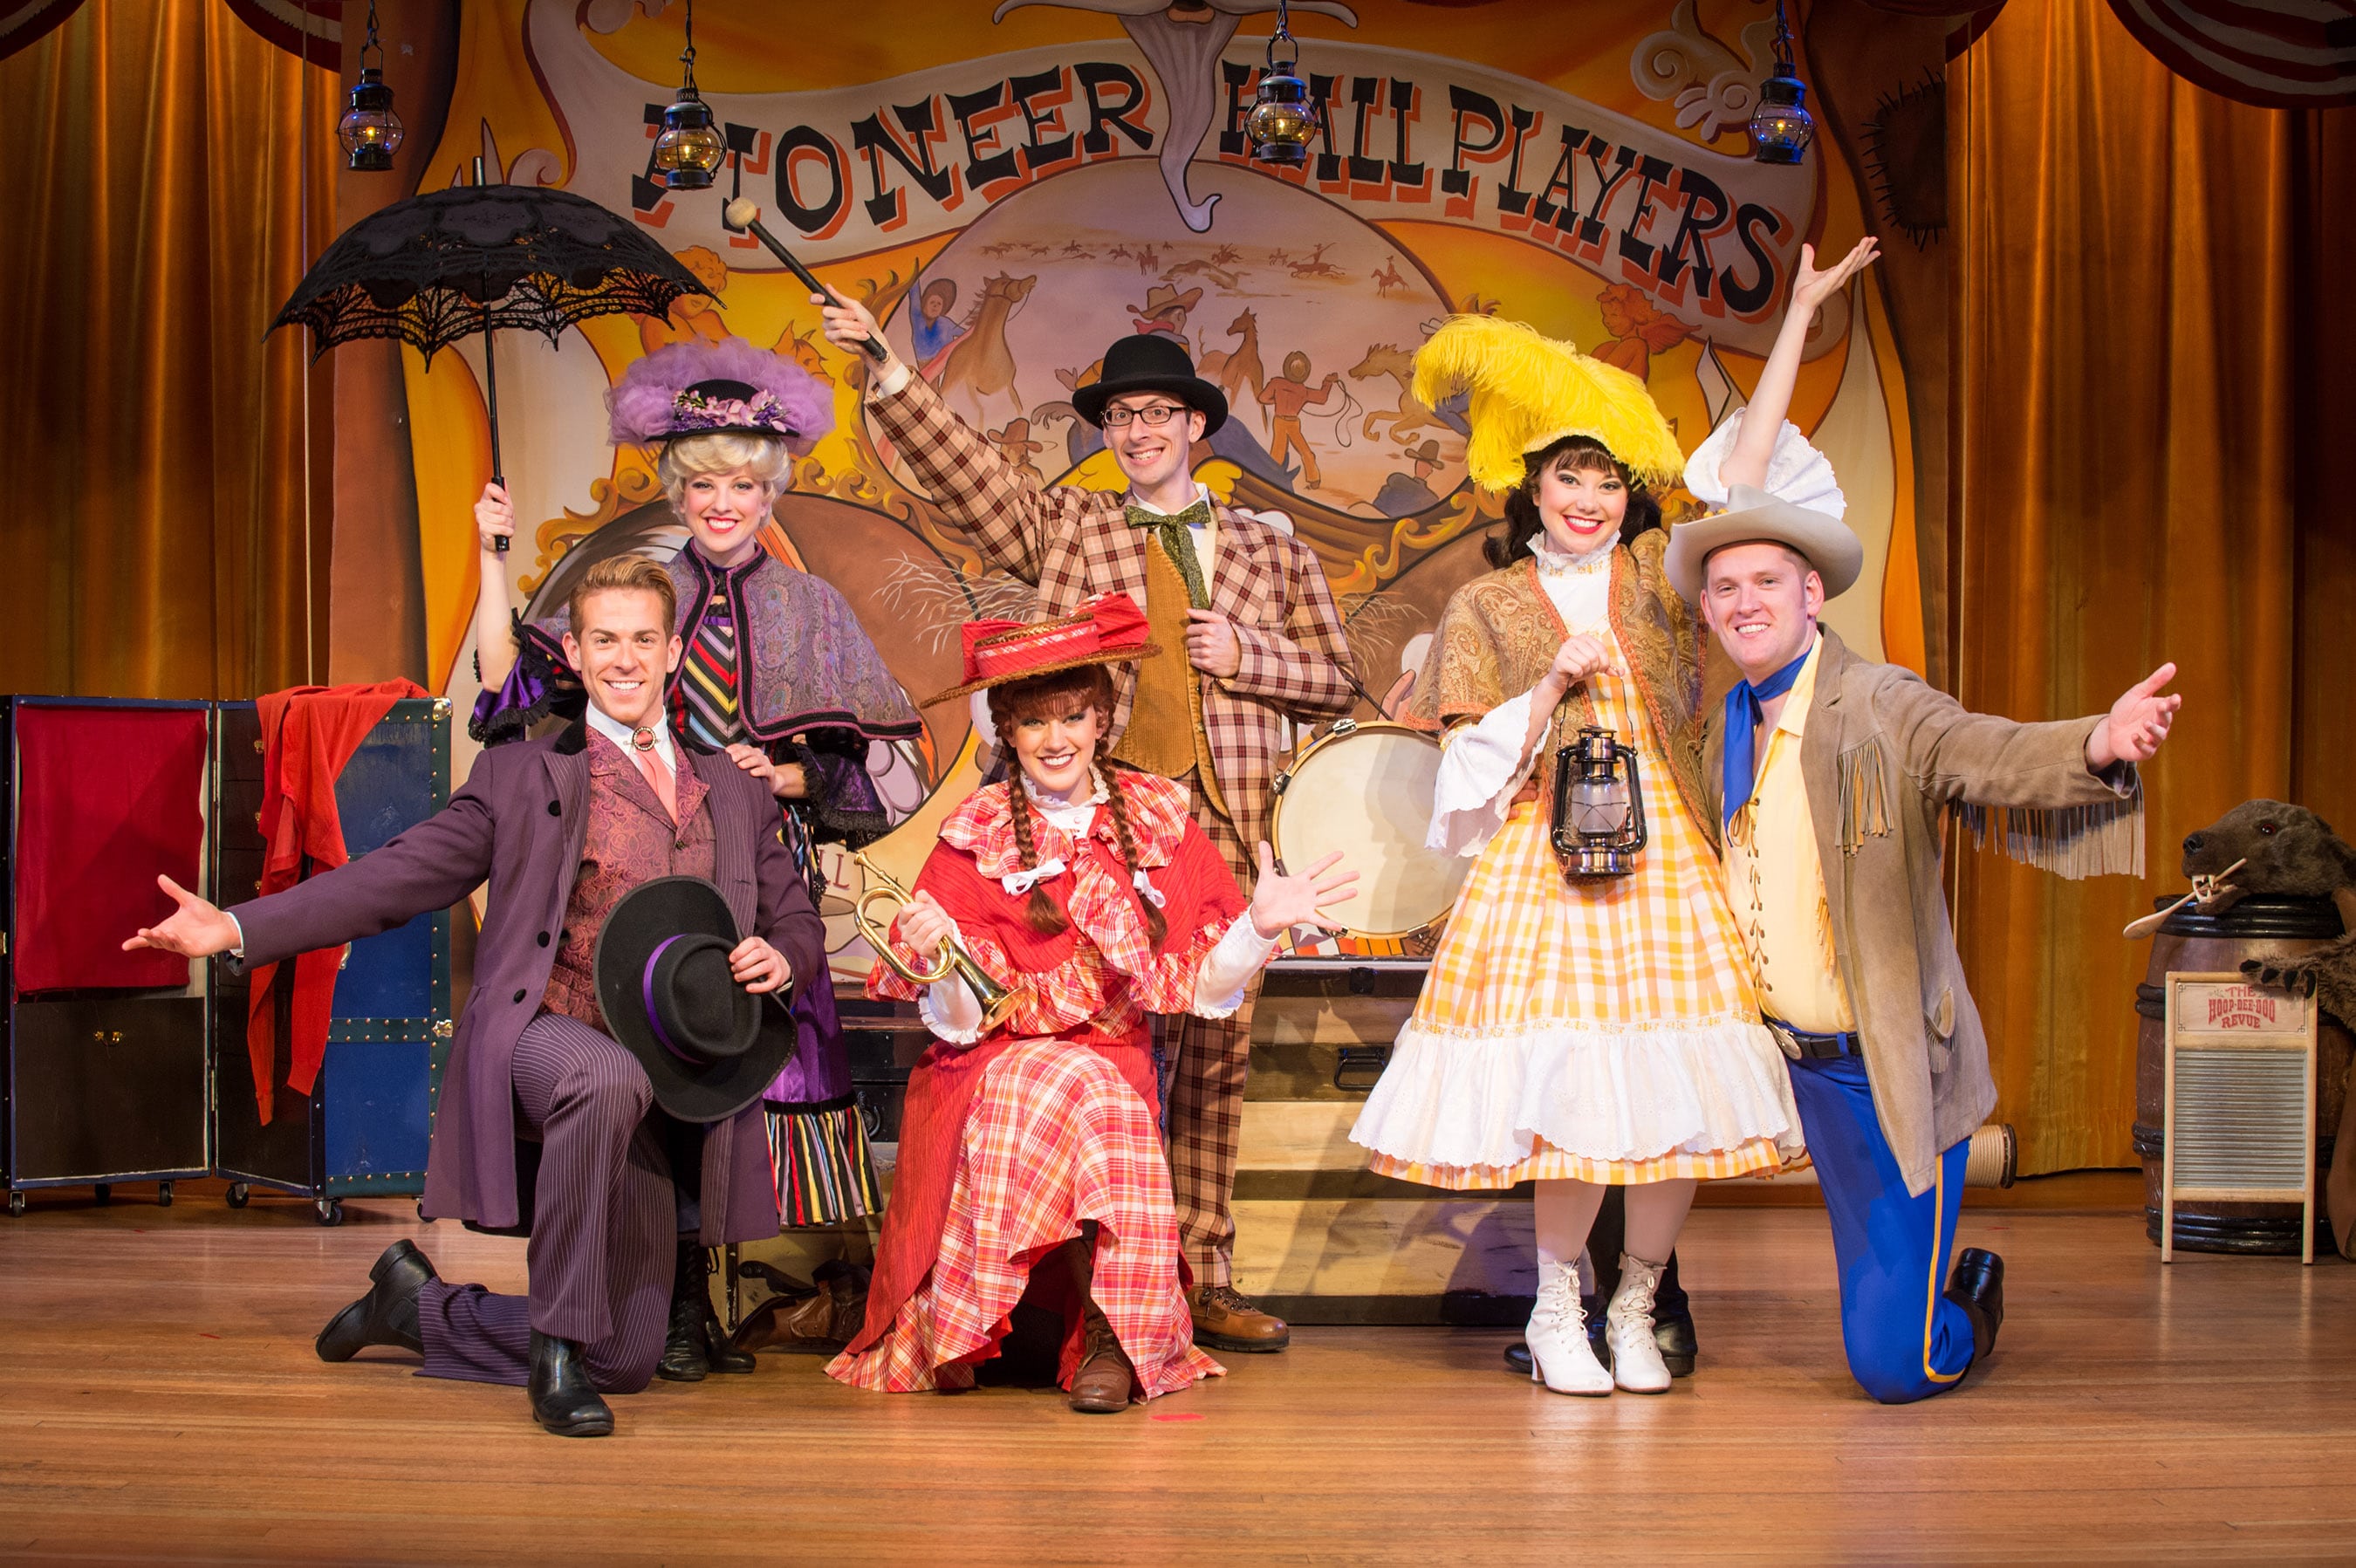 Hoop-Dee-Doo Musical Revue at Disney's Fort Wilderness